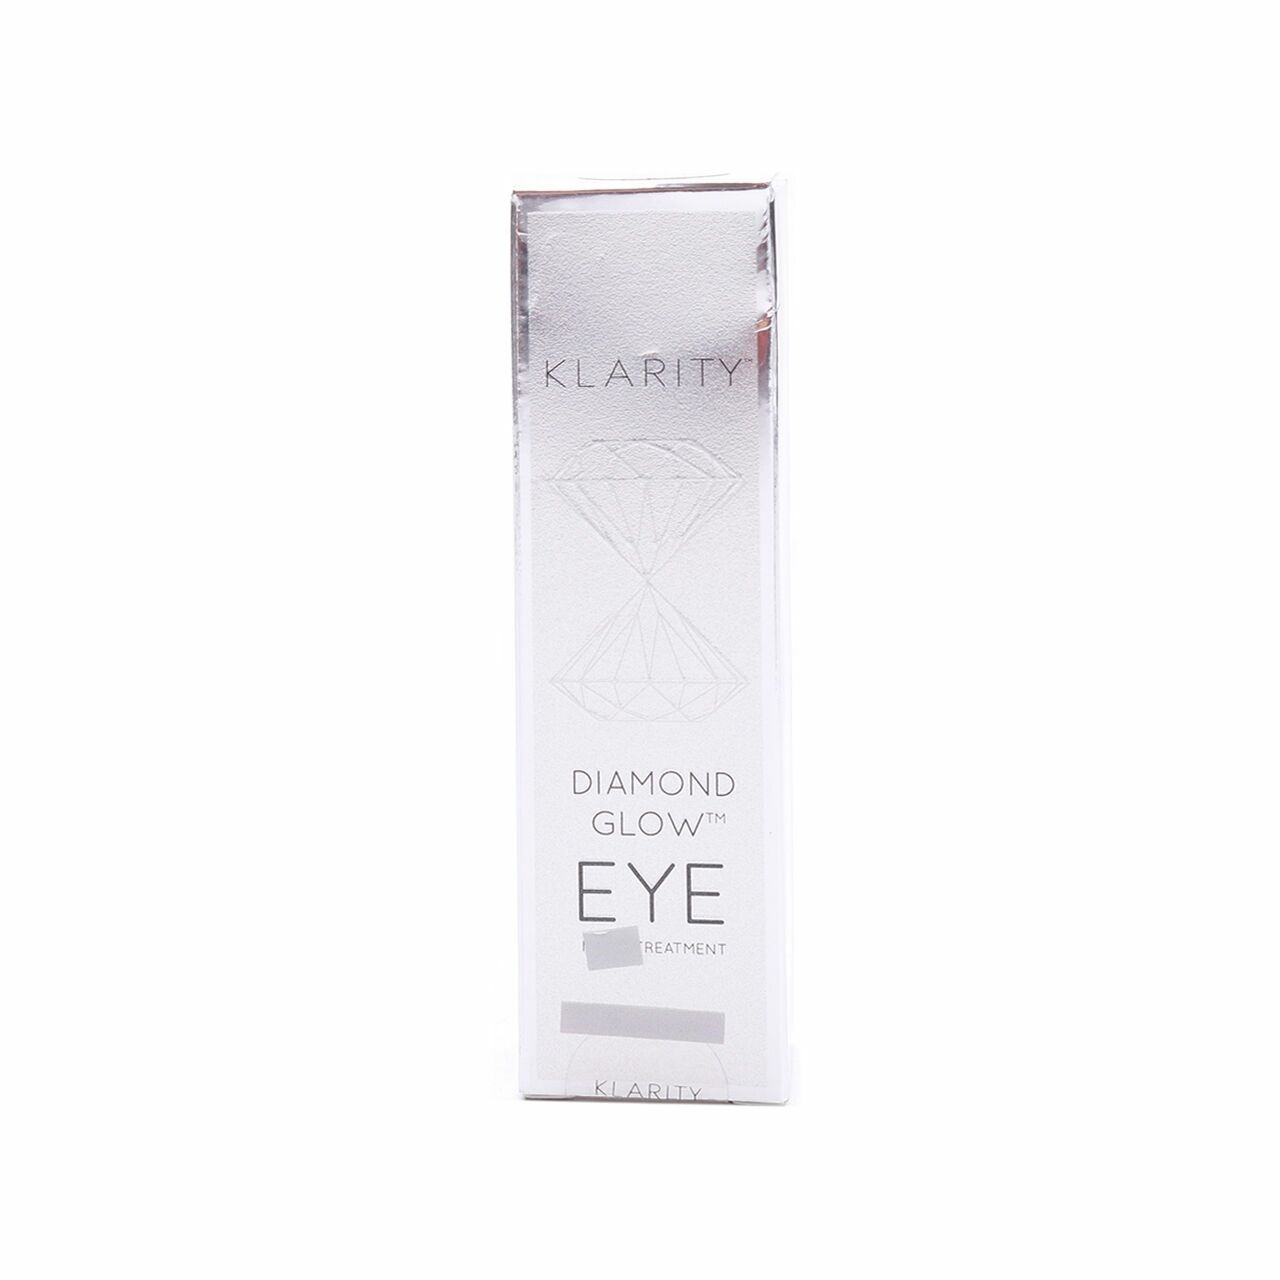 Klarity Diamond Glow Eye Treatment Eyes